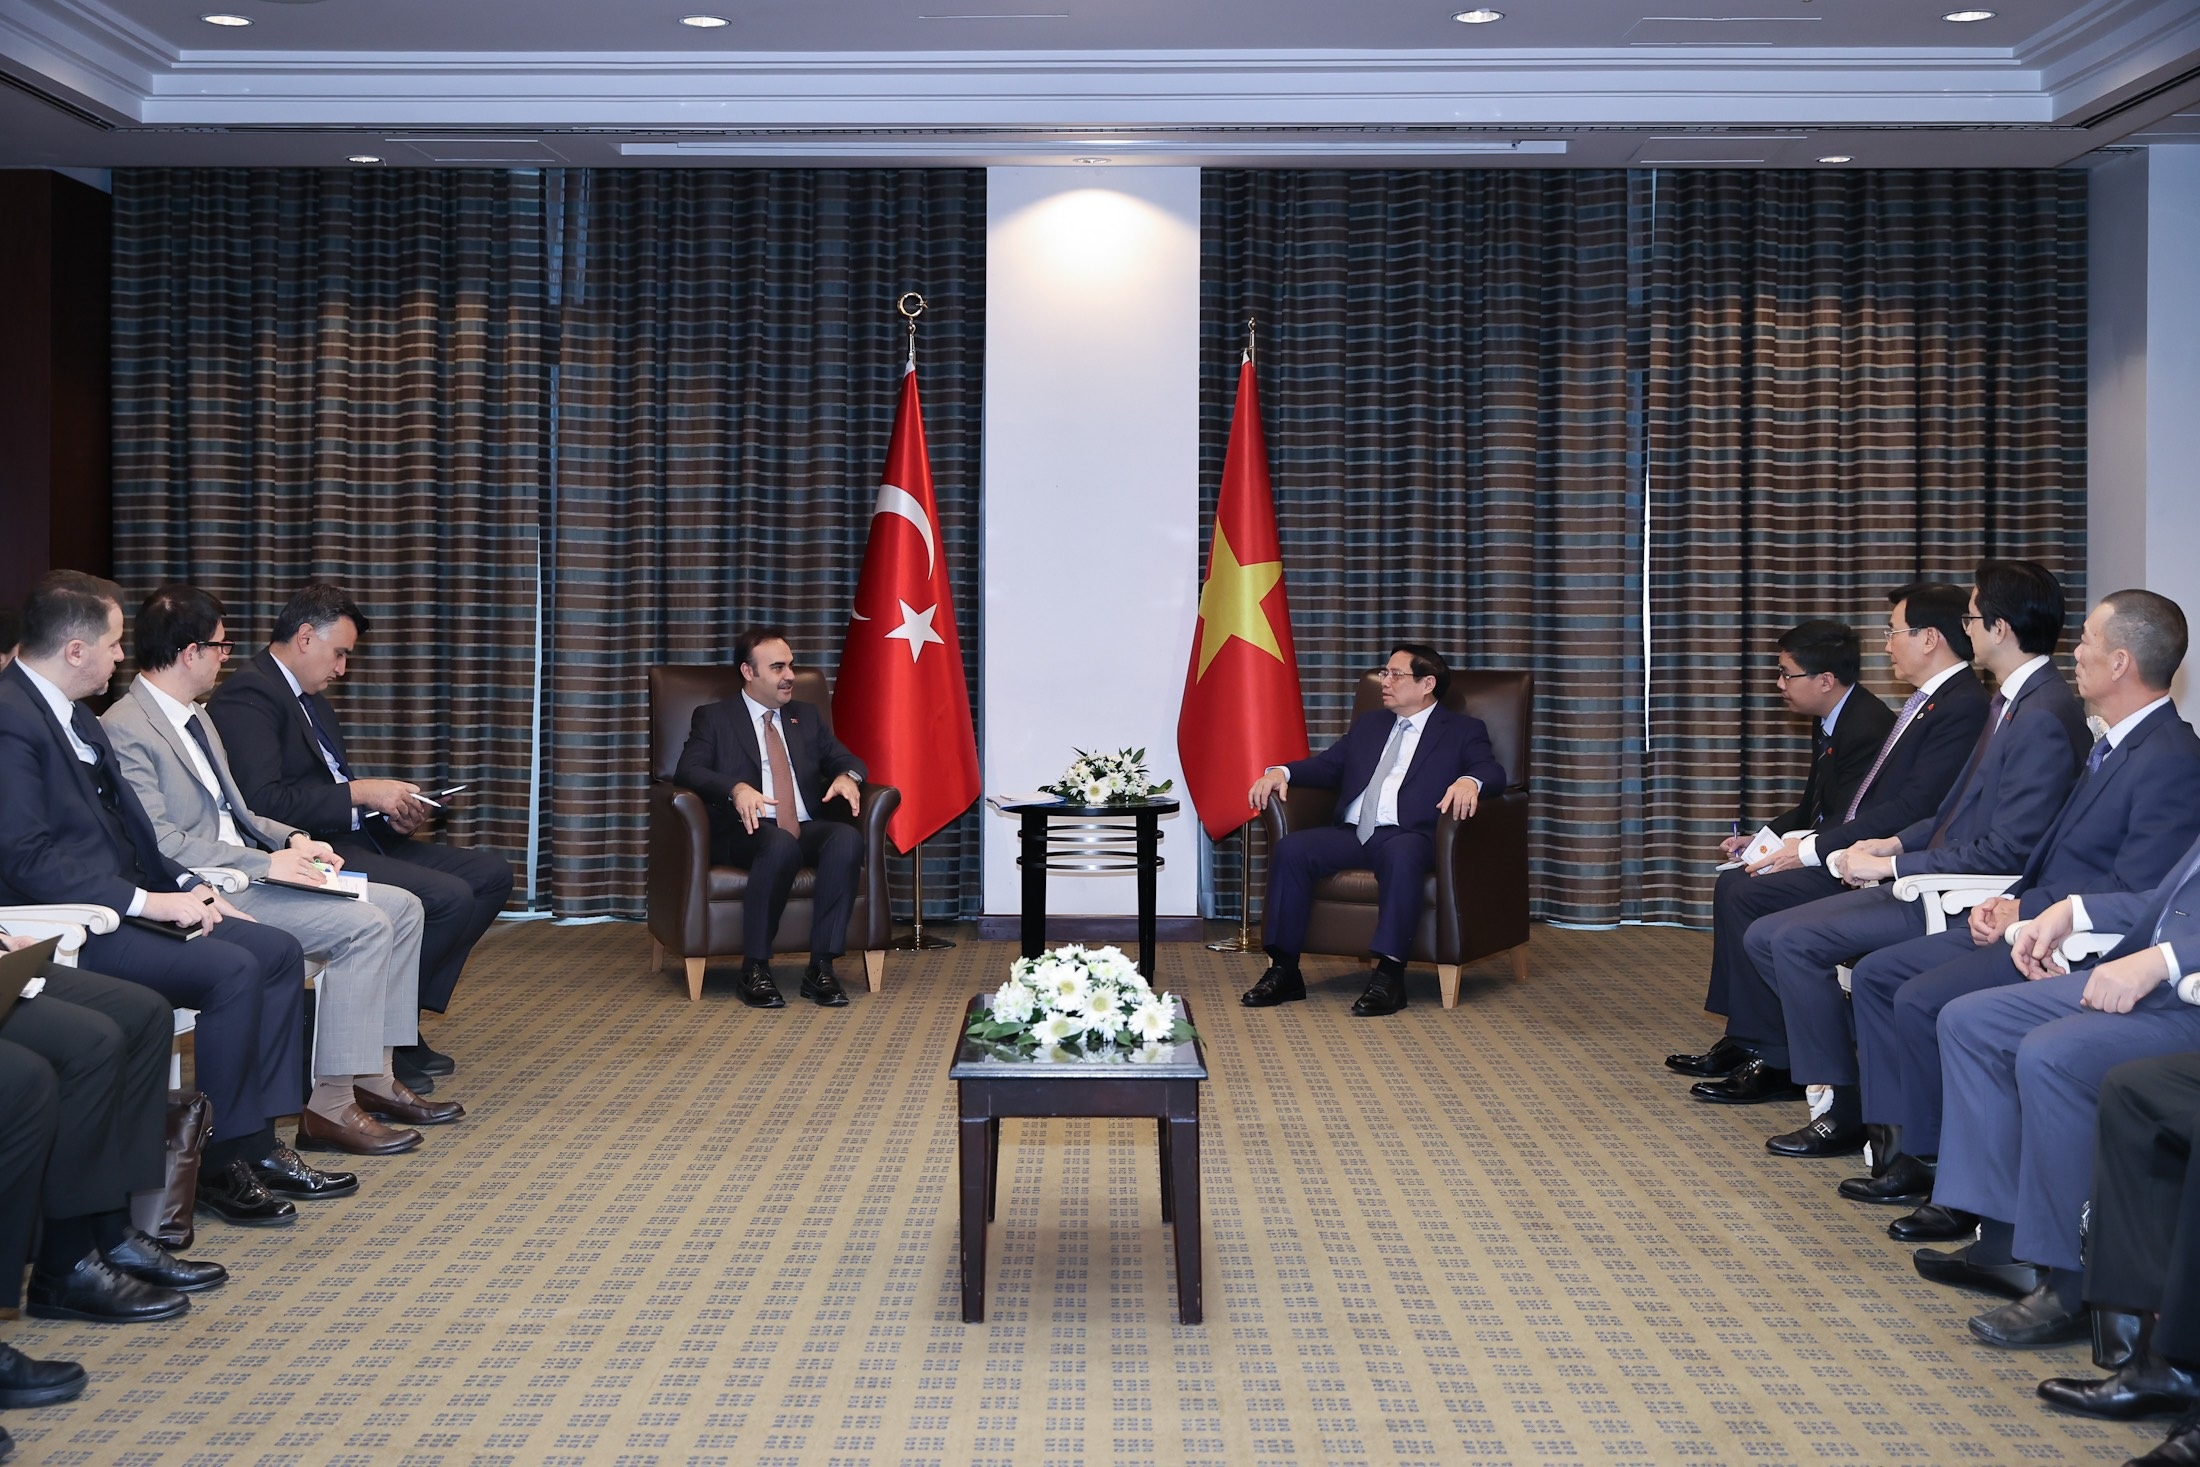 Thổ Nhĩ Kỳ muốn hợp tác với Việt Nam sản xuất ô tô, công nghiệp quốc phòng - 2